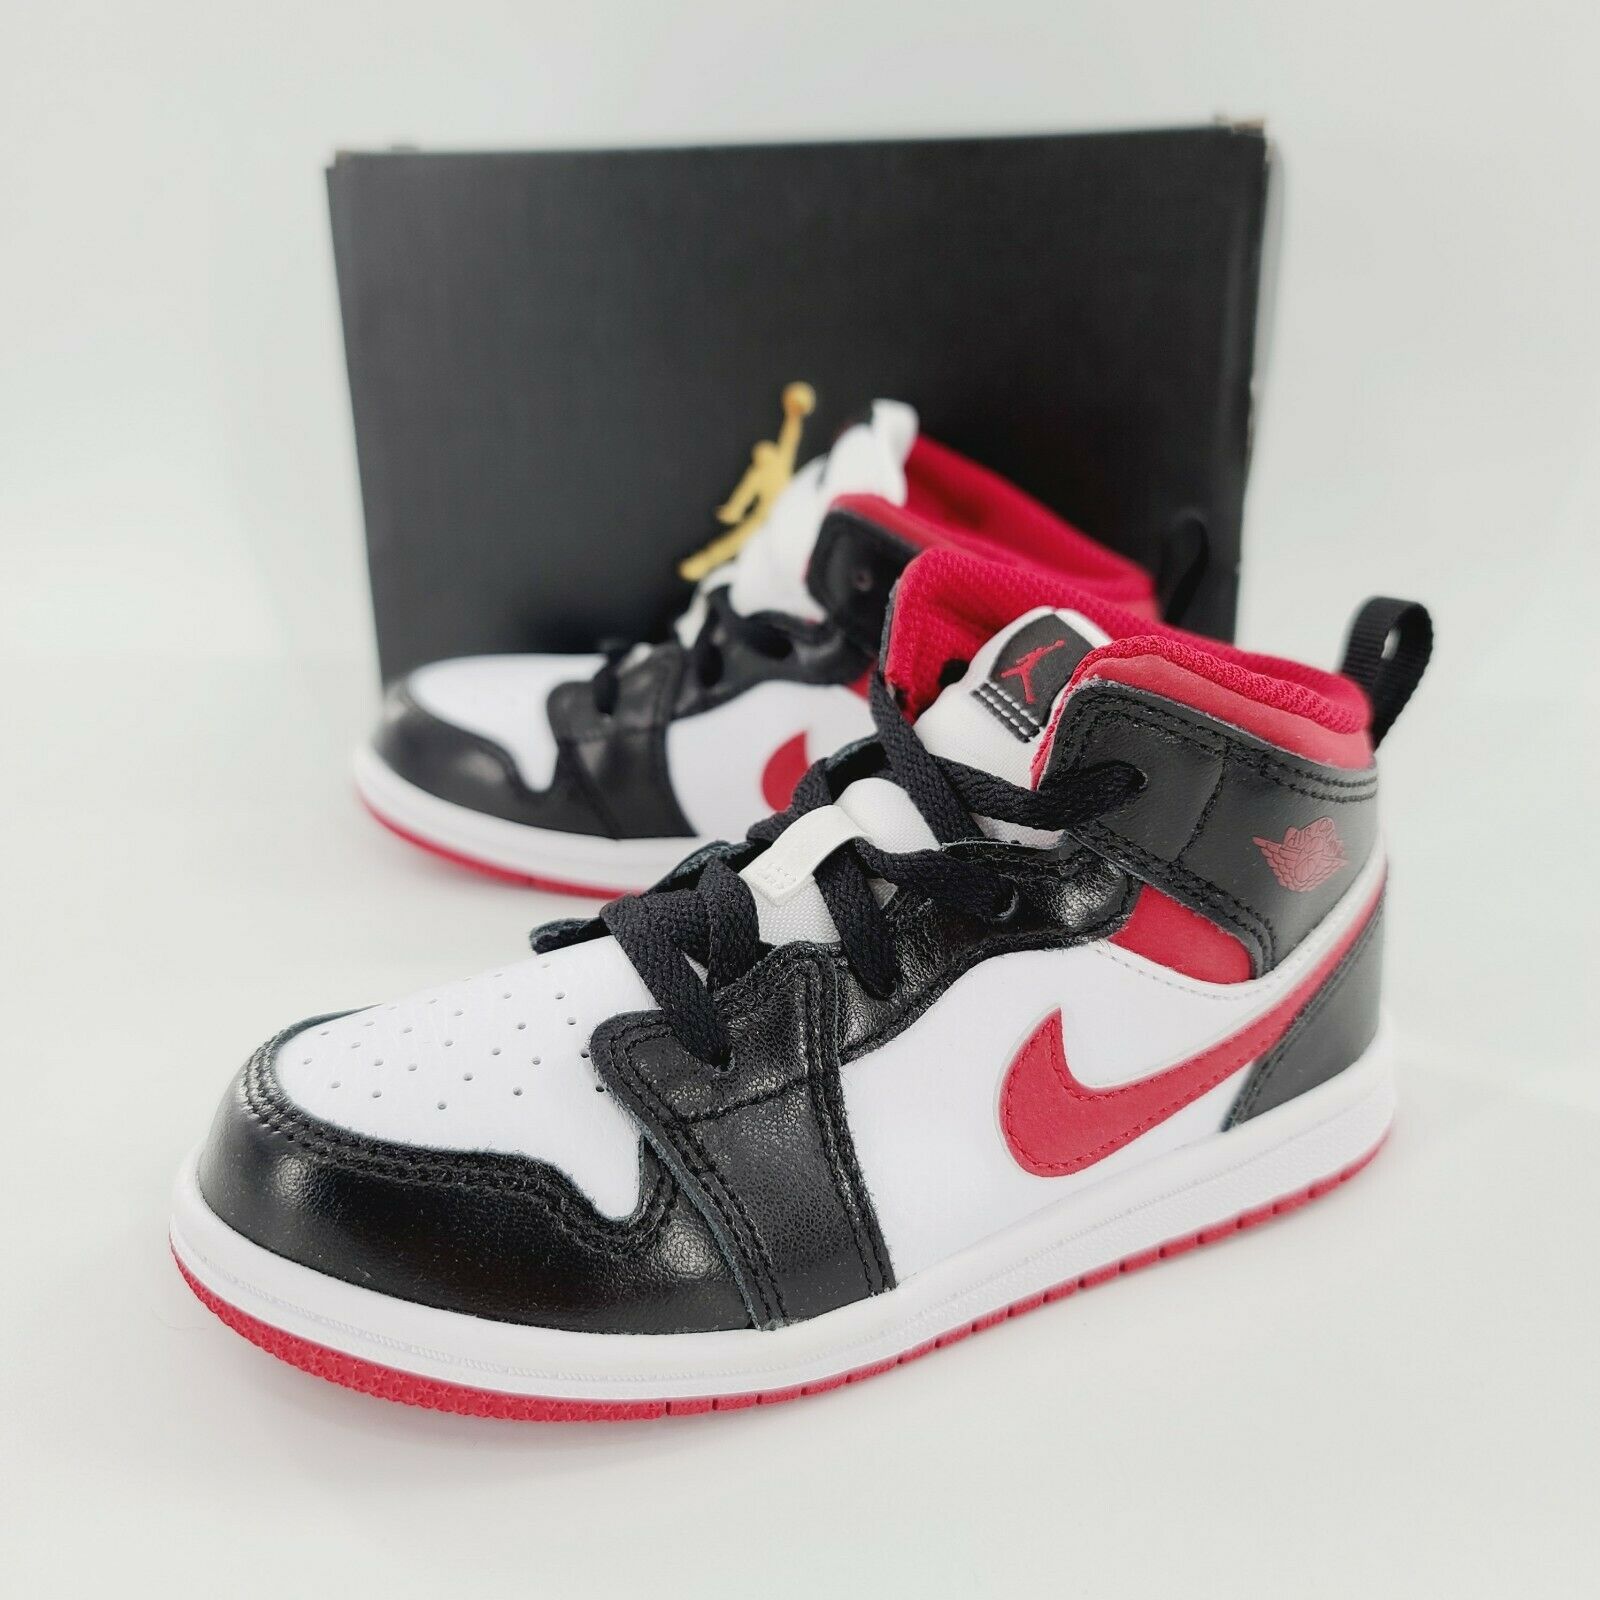 Nike Air Jordan 1 Mid TD Toddler White Gym Red 640735 122 Shoes Size 10c NIB